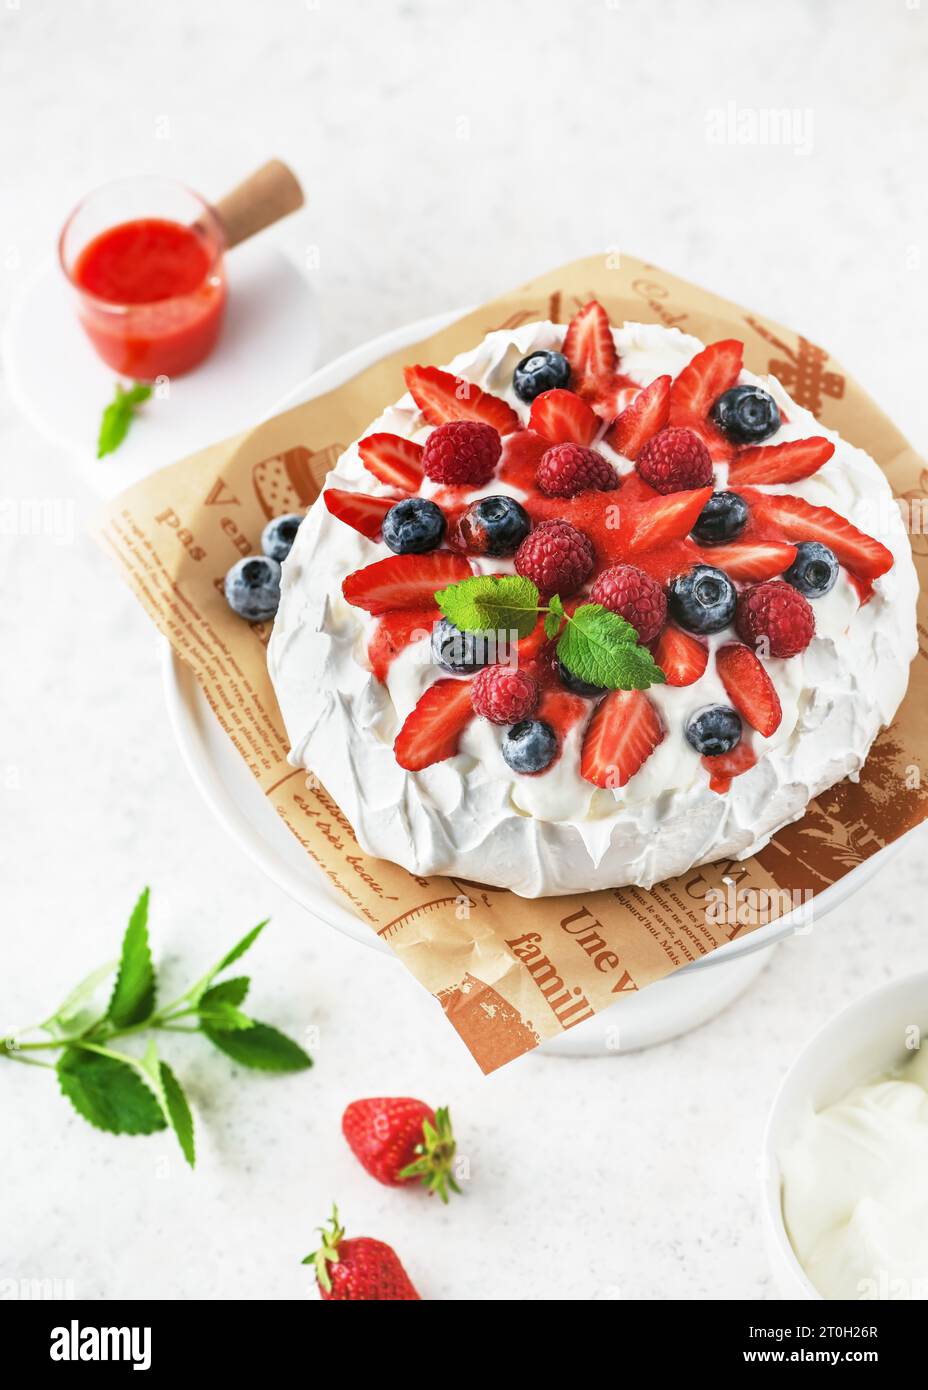 Vista superior del delicioso pastel de merengue casero Pavlova con crema batida, fresas frescas, arándanos, frambuesas y salsa de fresa. Foto de stock